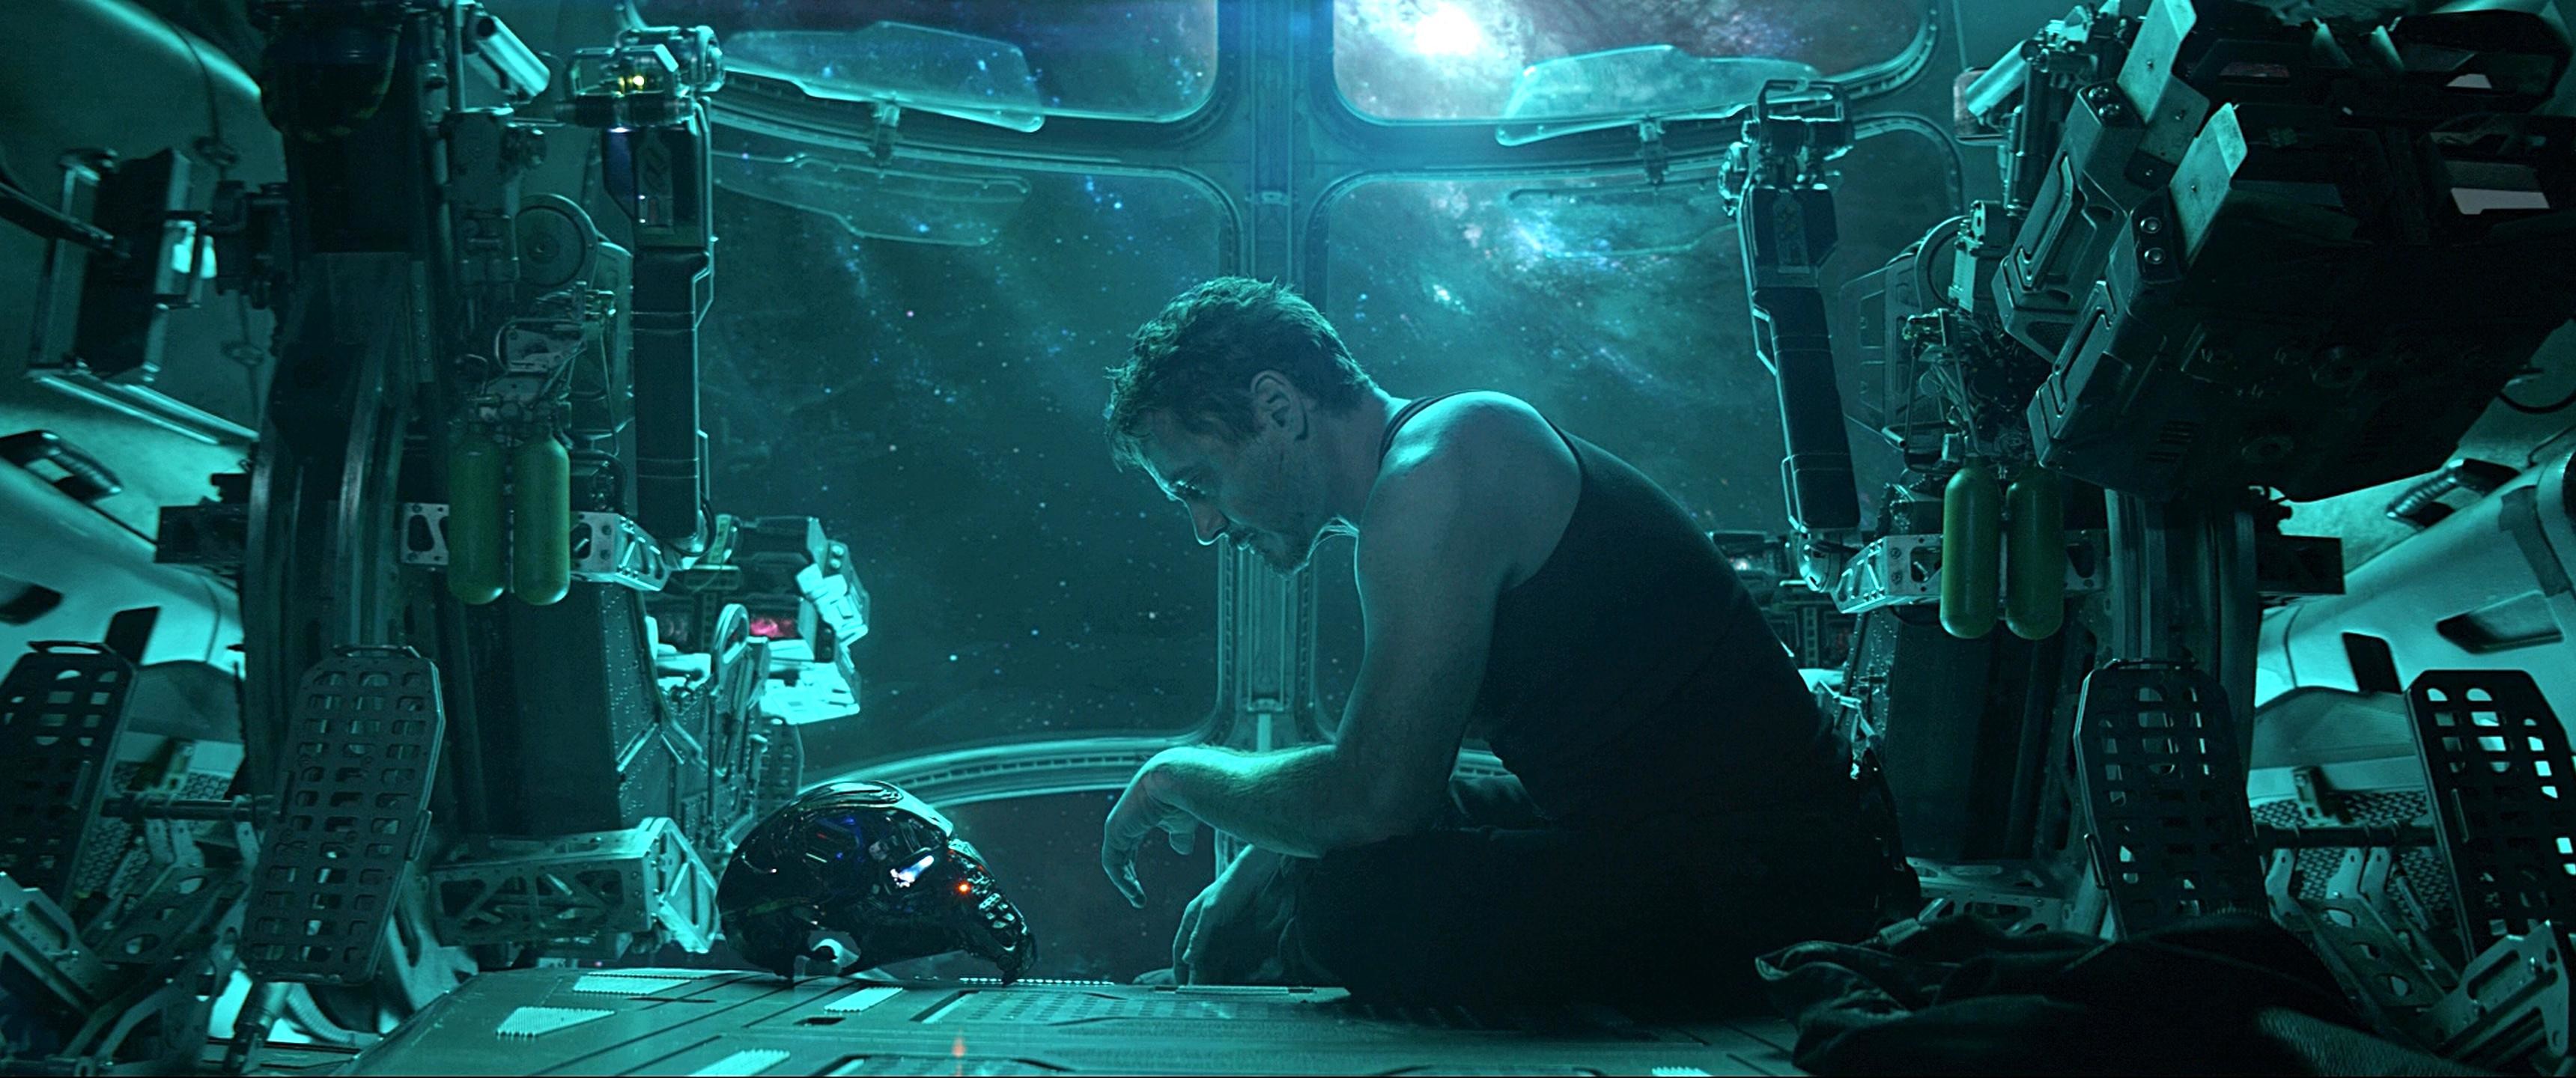 3440x1440 Tony Stark in space (from Avengers: Endgame trailer) [] ...